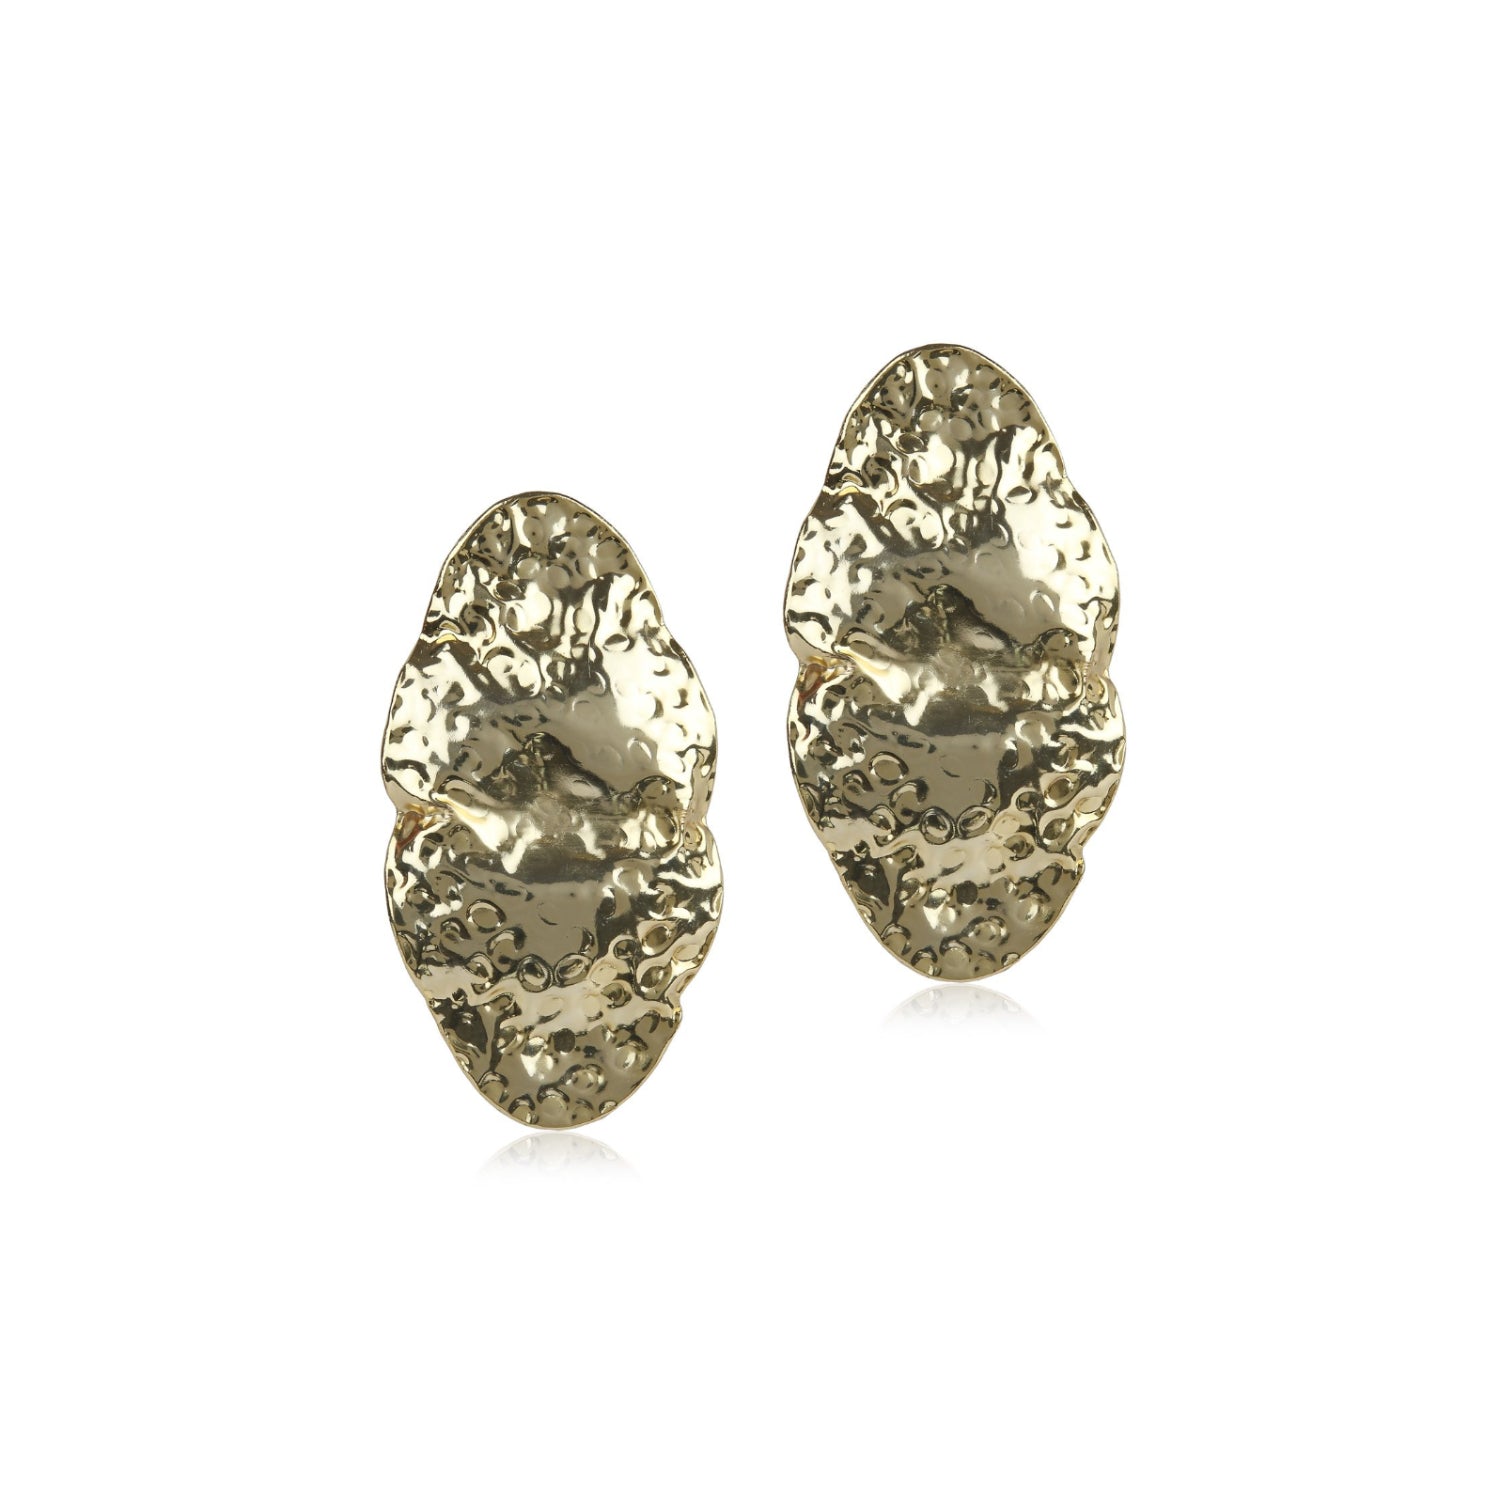 Beaten Metal Oval Earrings (Gold)